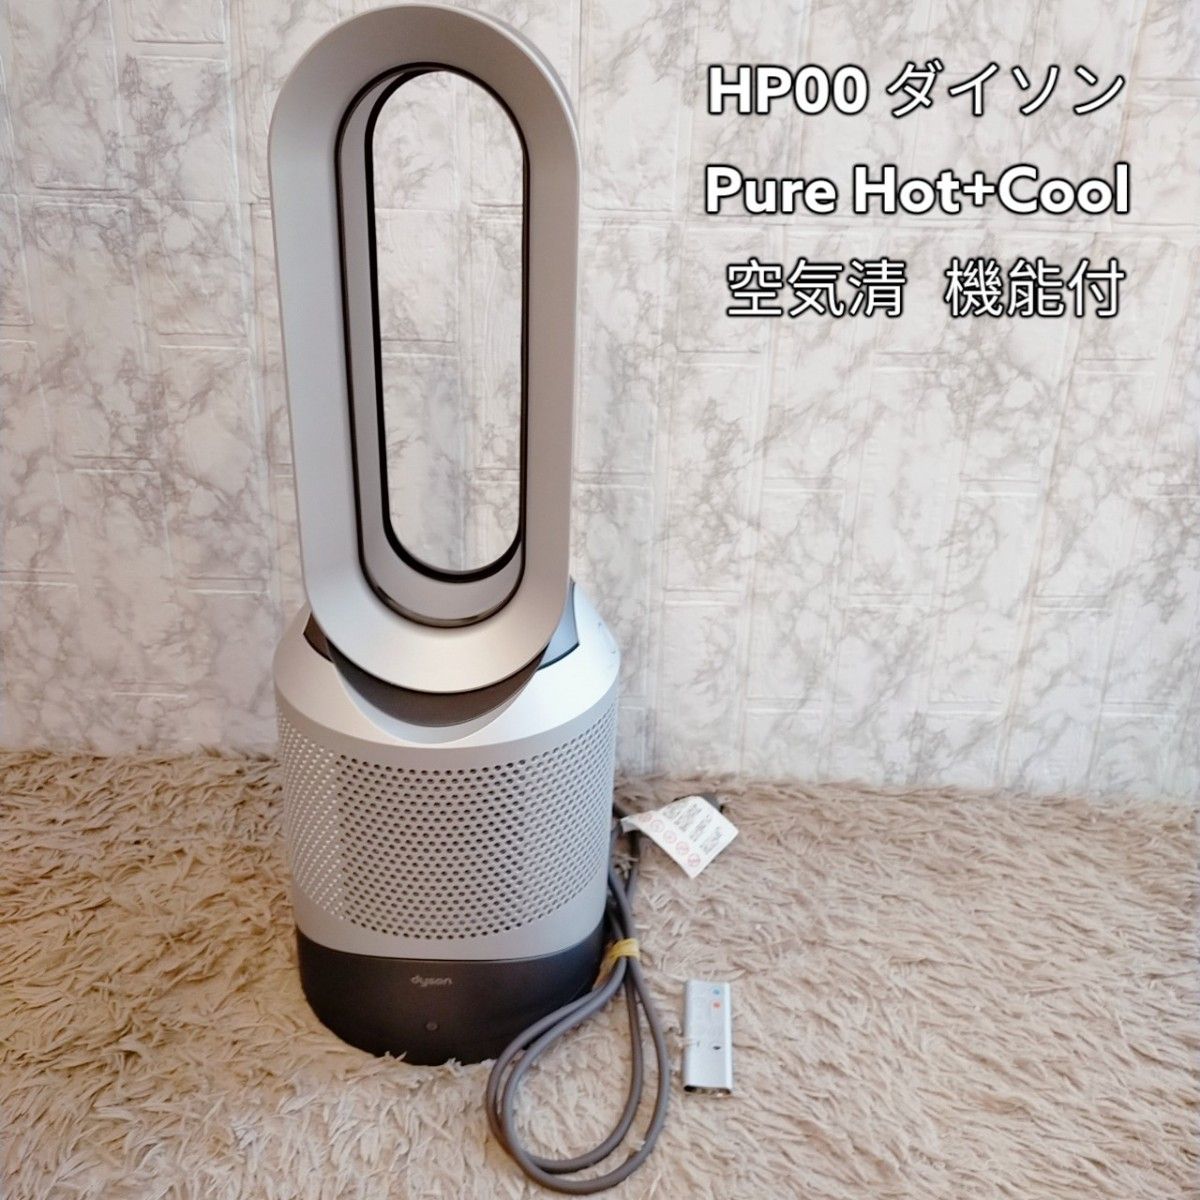 hp00 ダイソン　Pure Hot+Cool HP00 　空気清浄機能付_画像1